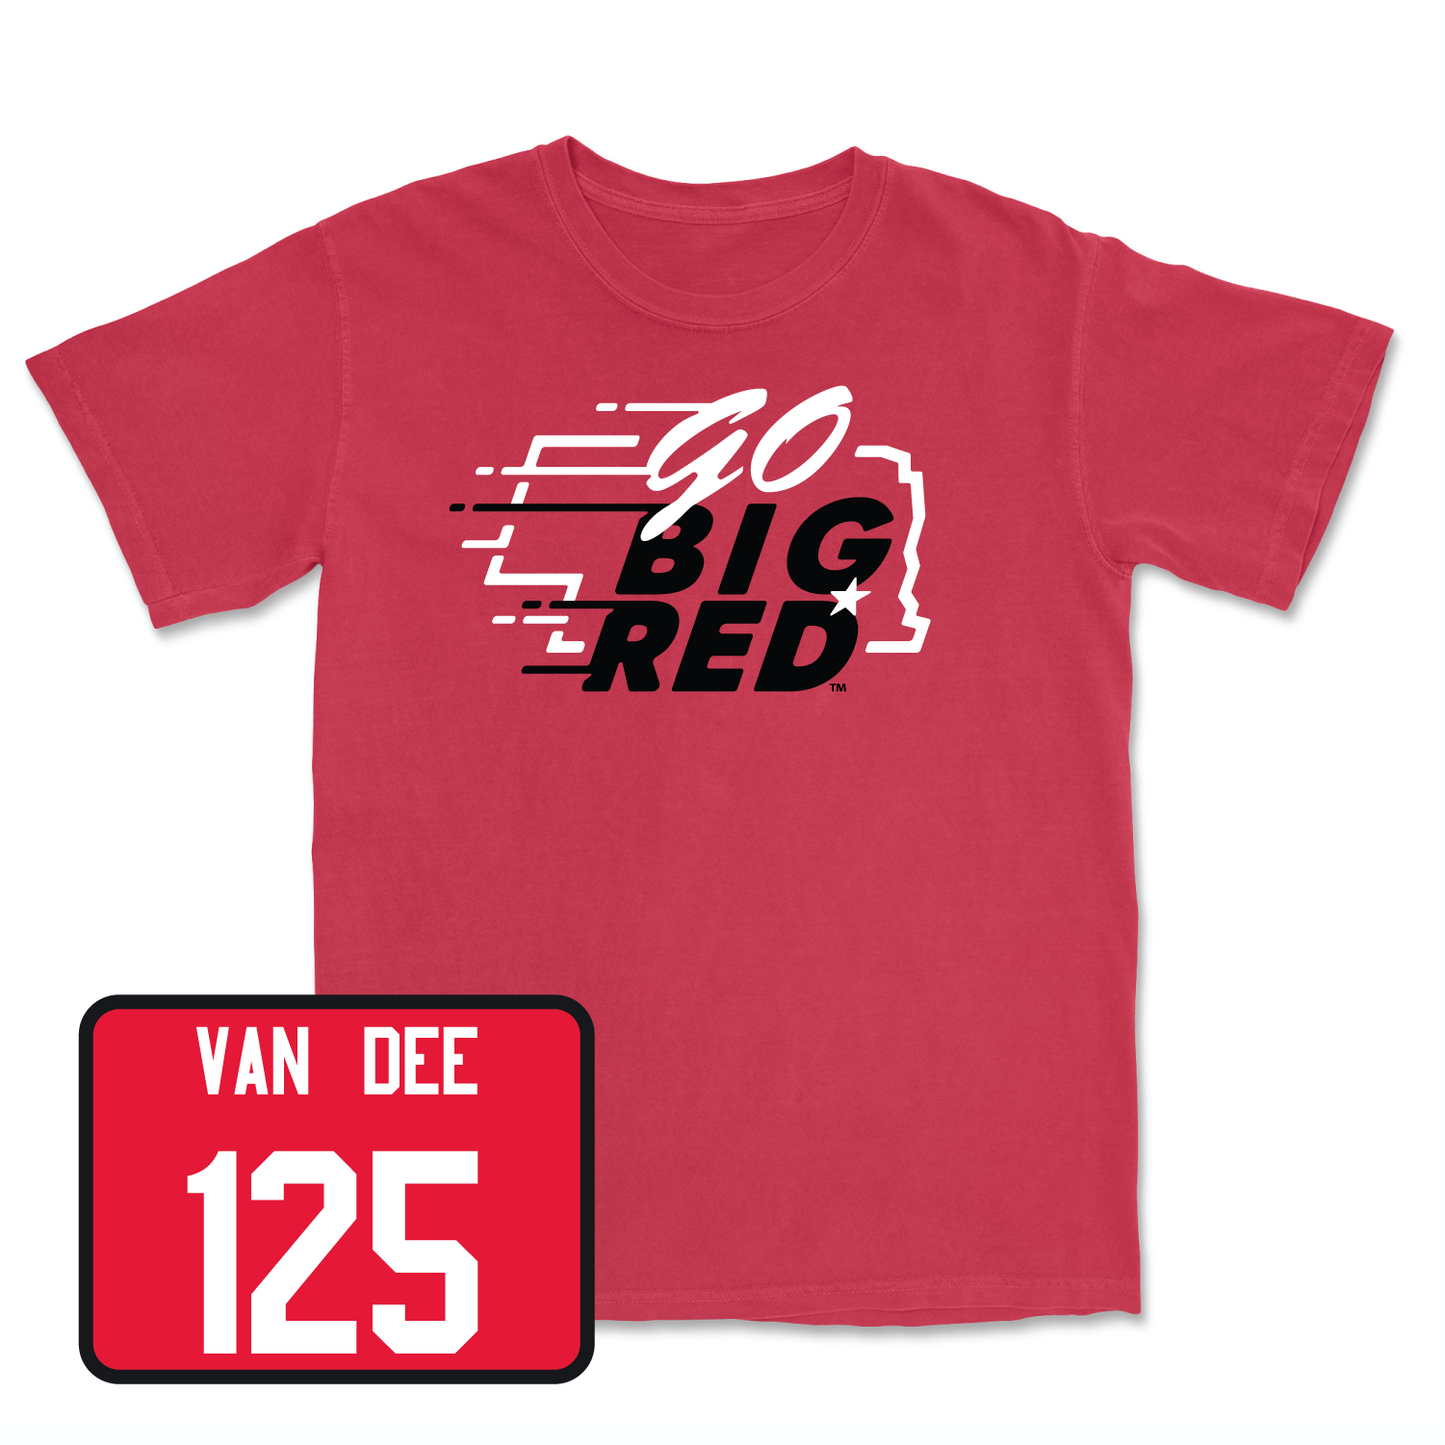 Red Wrestling GBR Tee Medium / Jacob Van Dee | #125